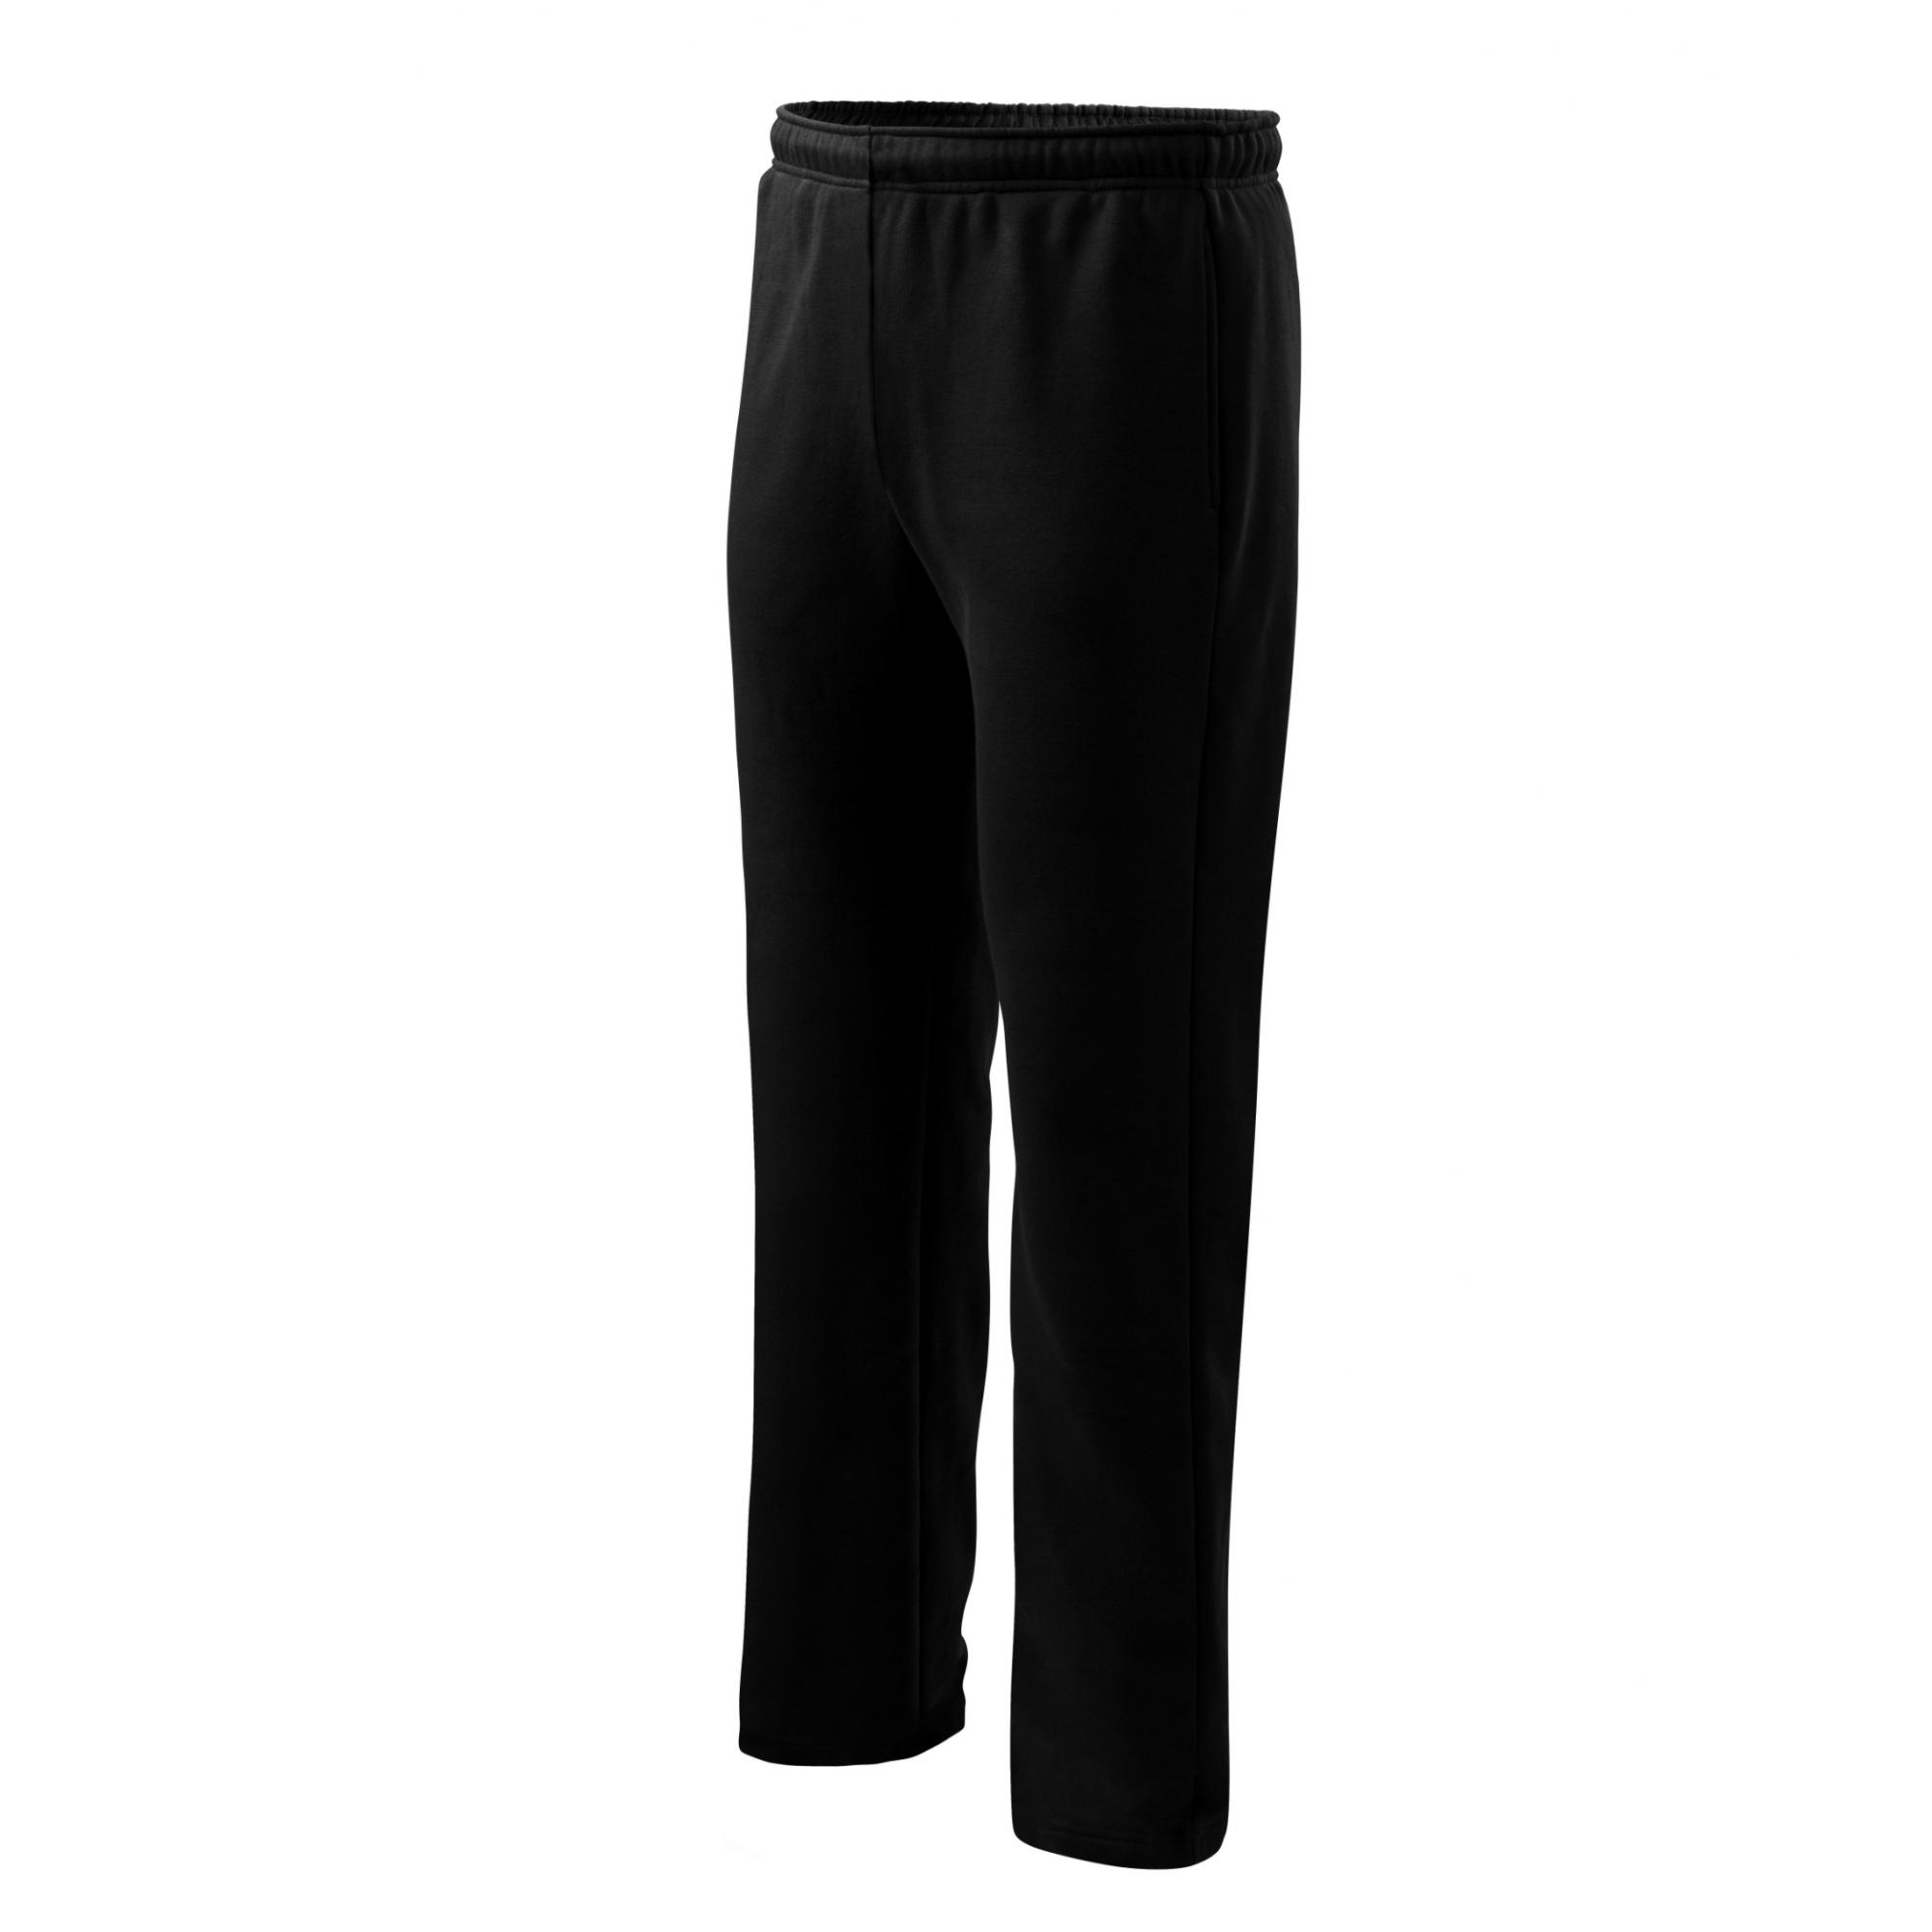 Pantaloni pentru bărbaţi/copii Comfort 607 Negru S